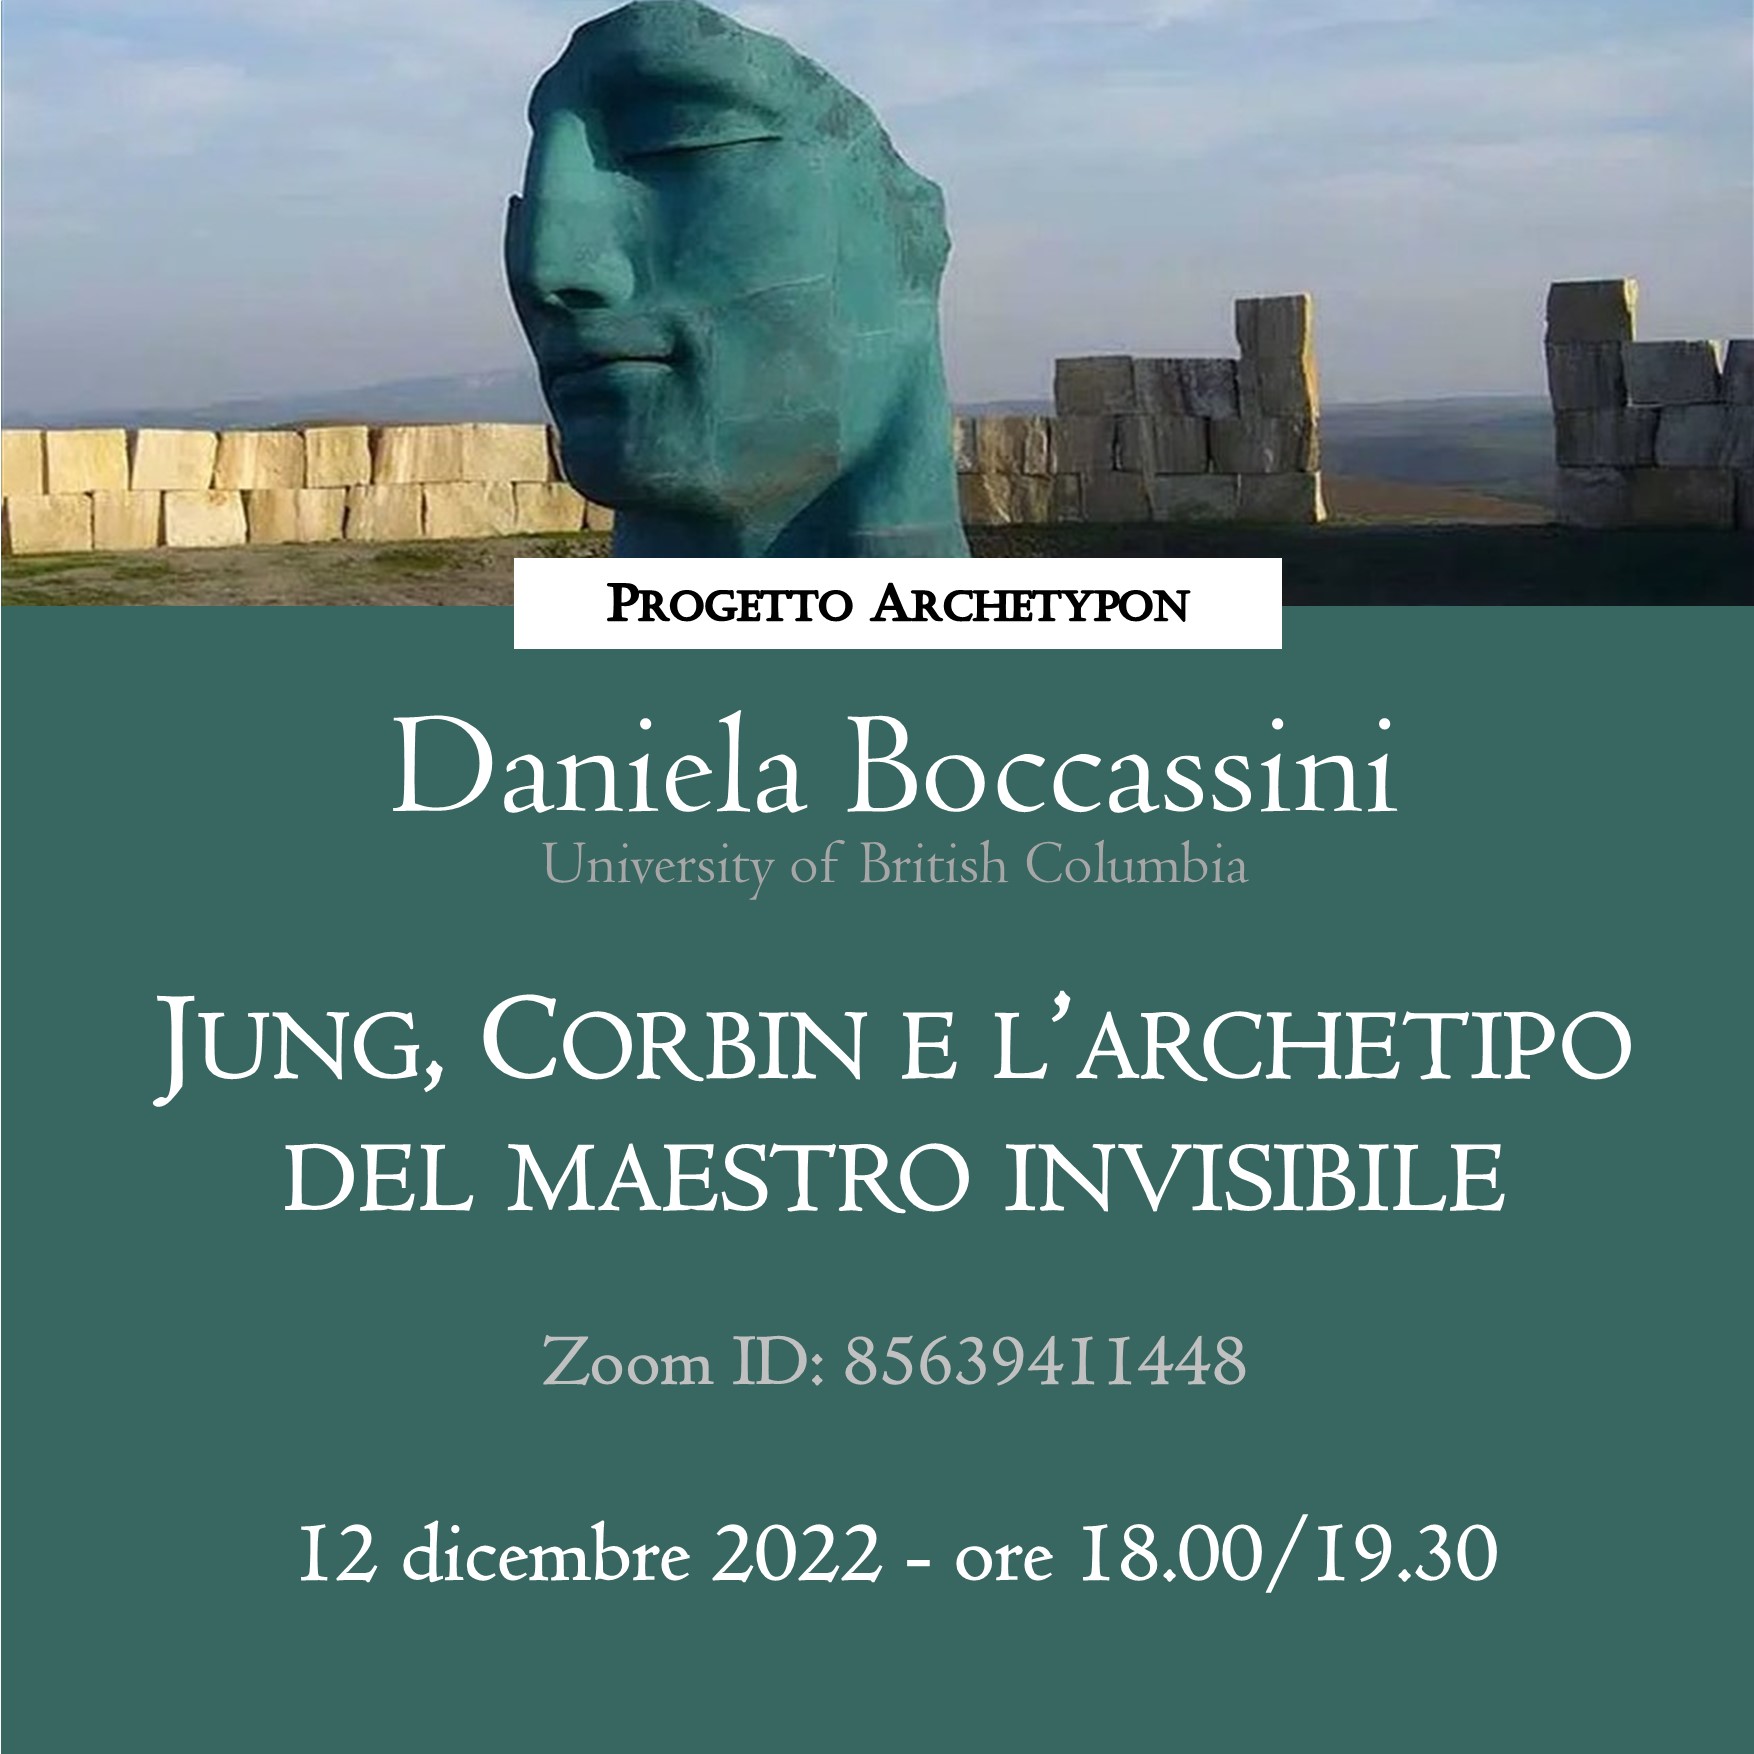 Attachment 04. QUARTO - Boccassini - 12 dicembre 2022 - Copia.jpg